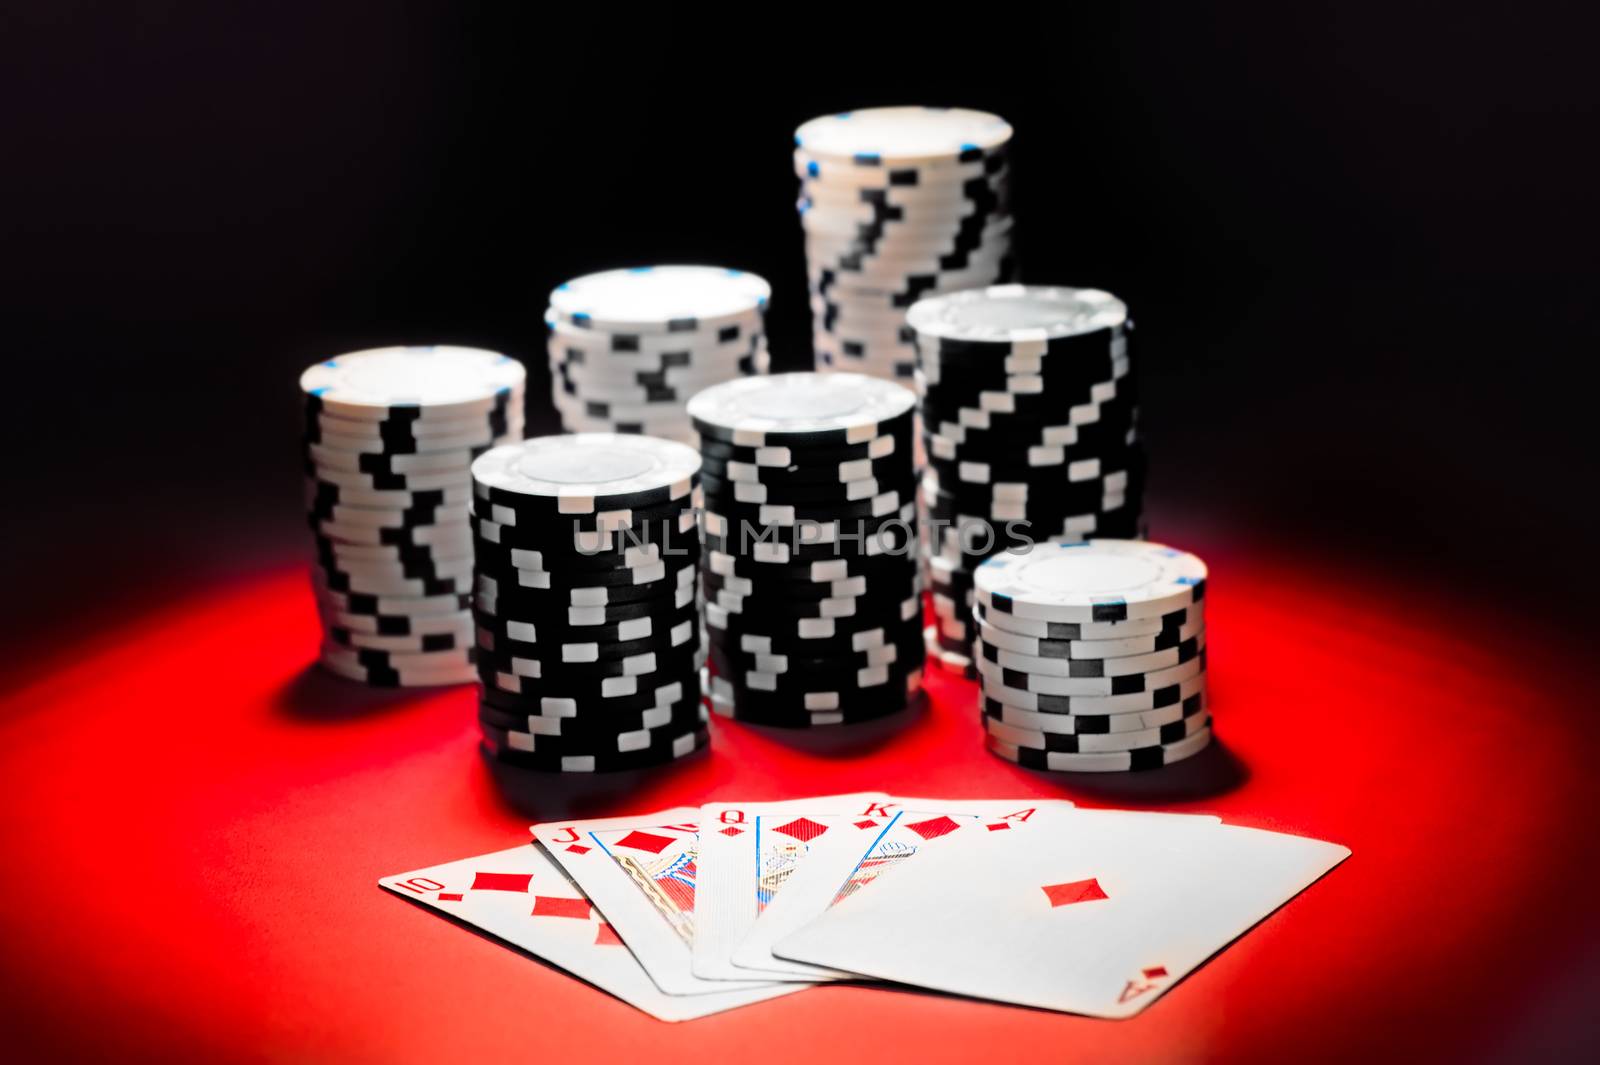 Poker, royal flush and gambling chips. by kosmsos111